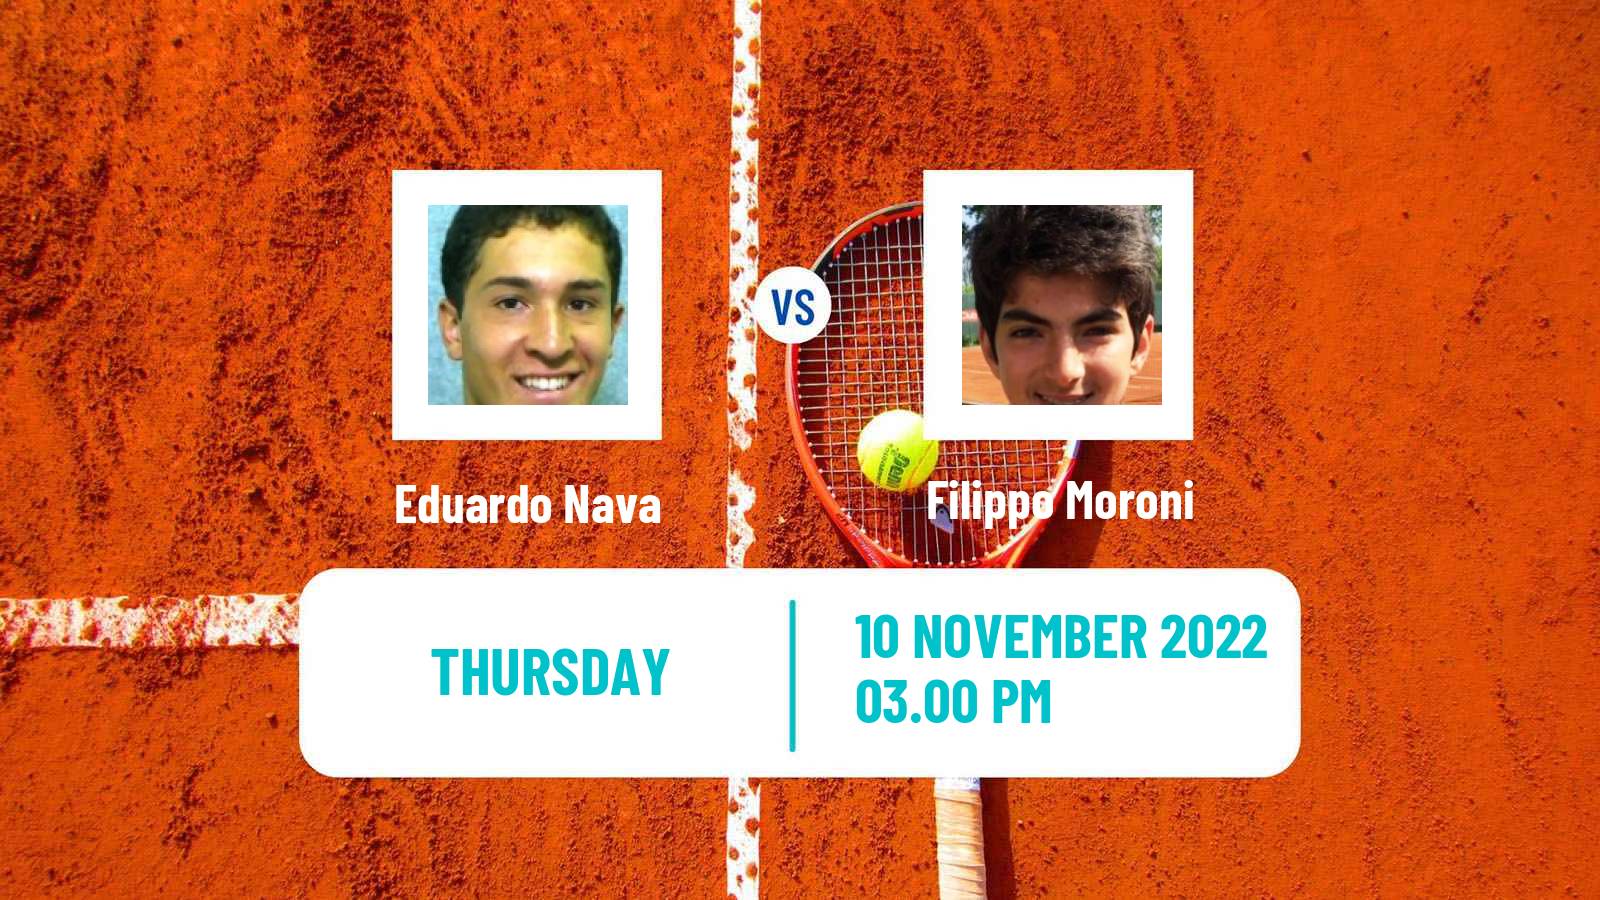 Tennis ITF Tournaments Eduardo Nava - Filippo Moroni